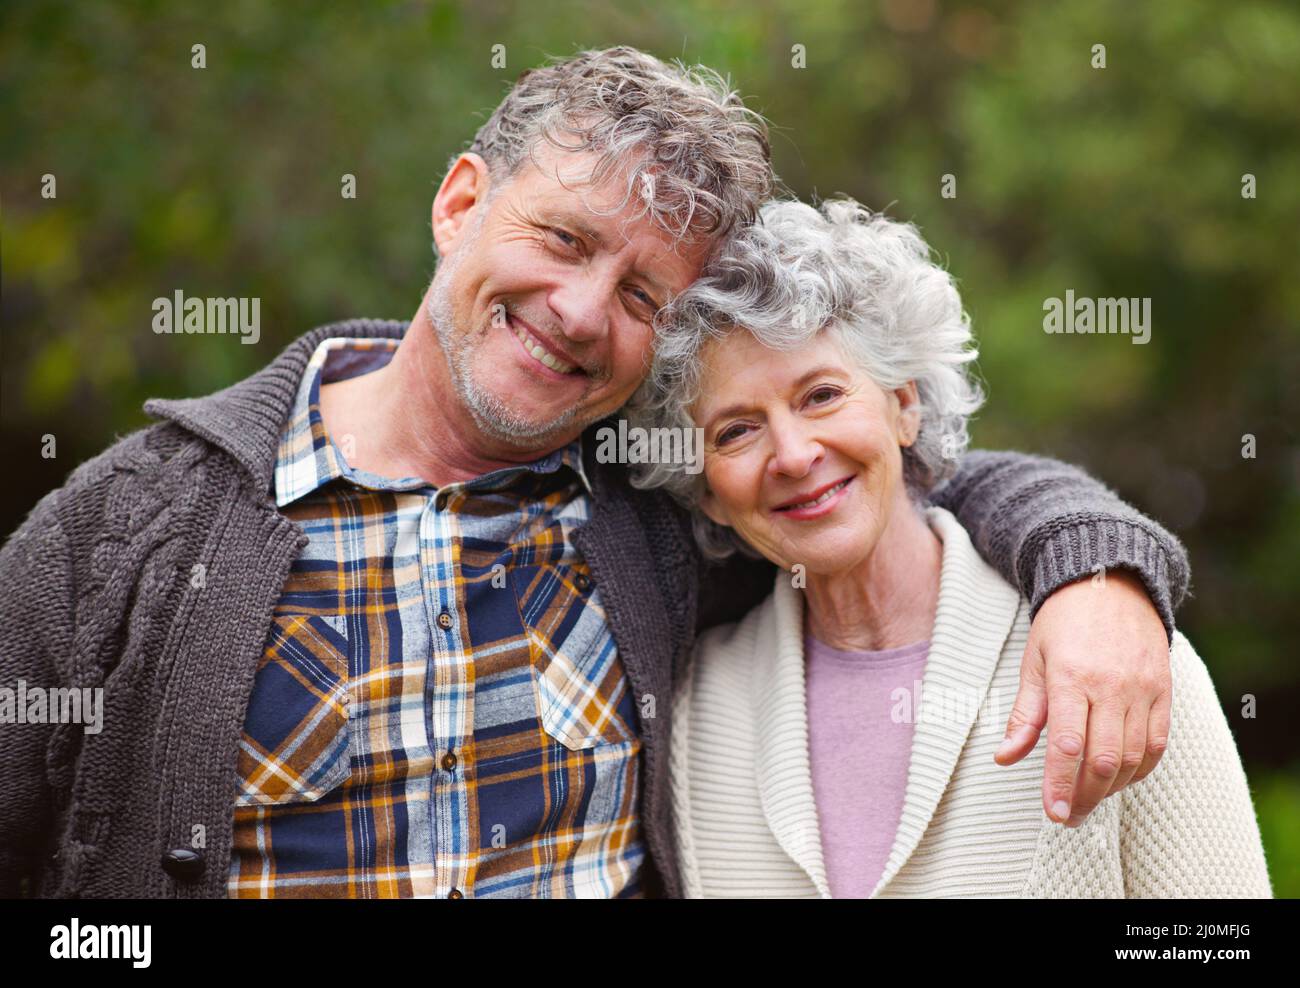 Ils partagent une vie de souvenirs. Portrait d'un couple aîné aimant debout ensemble à l'extérieur. Banque D'Images